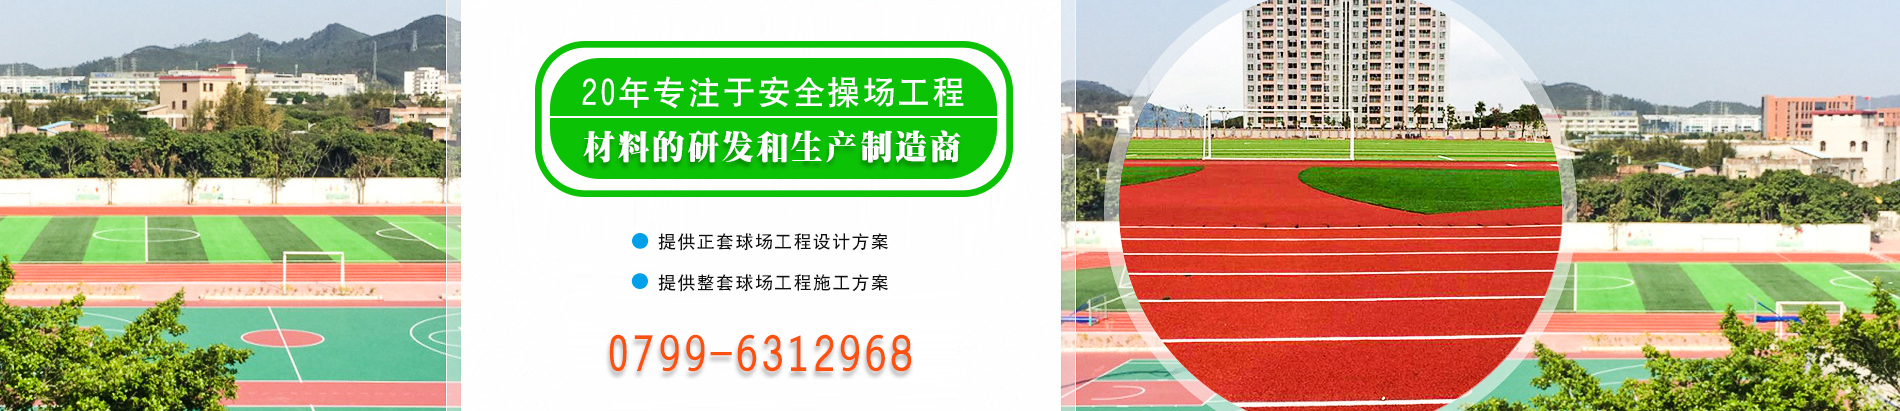 萍乡市永康体育设施有限公司